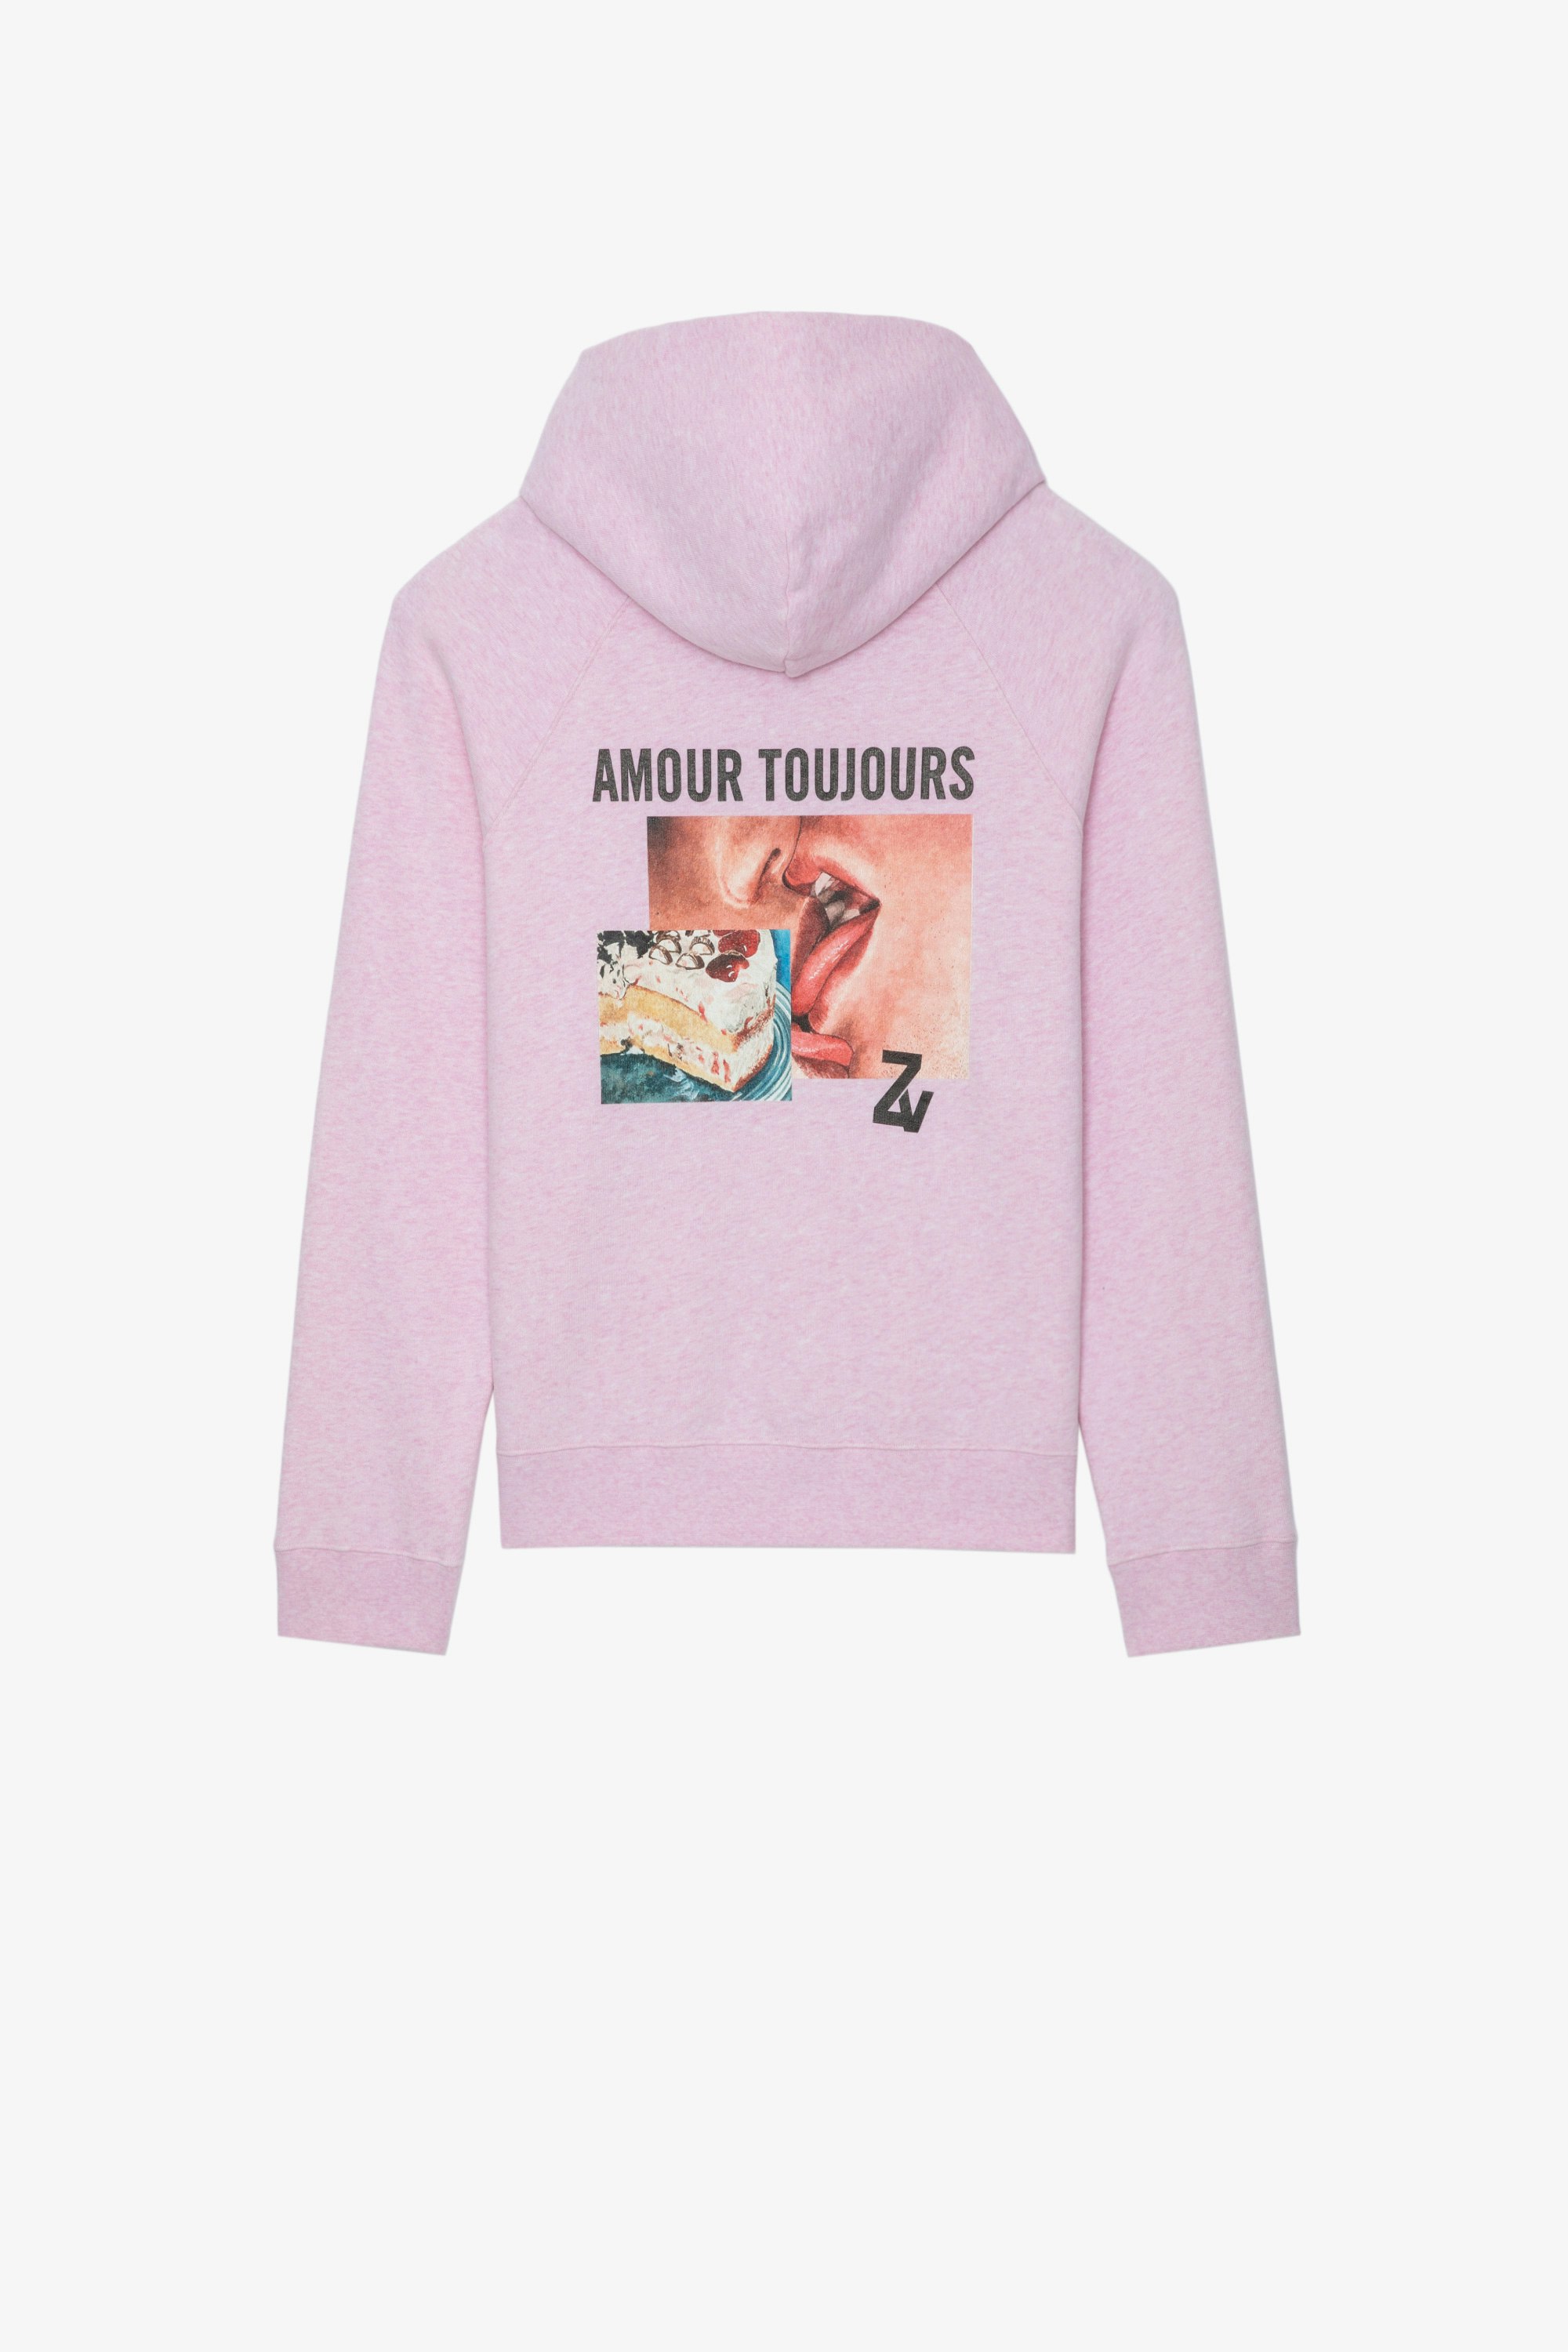 Sweatshirt Georgy Photoprint Sweatshirt à capuche en coton rose orné d'un imprimé photoprint et des messages "Art" et "Amour Toujours" Femme